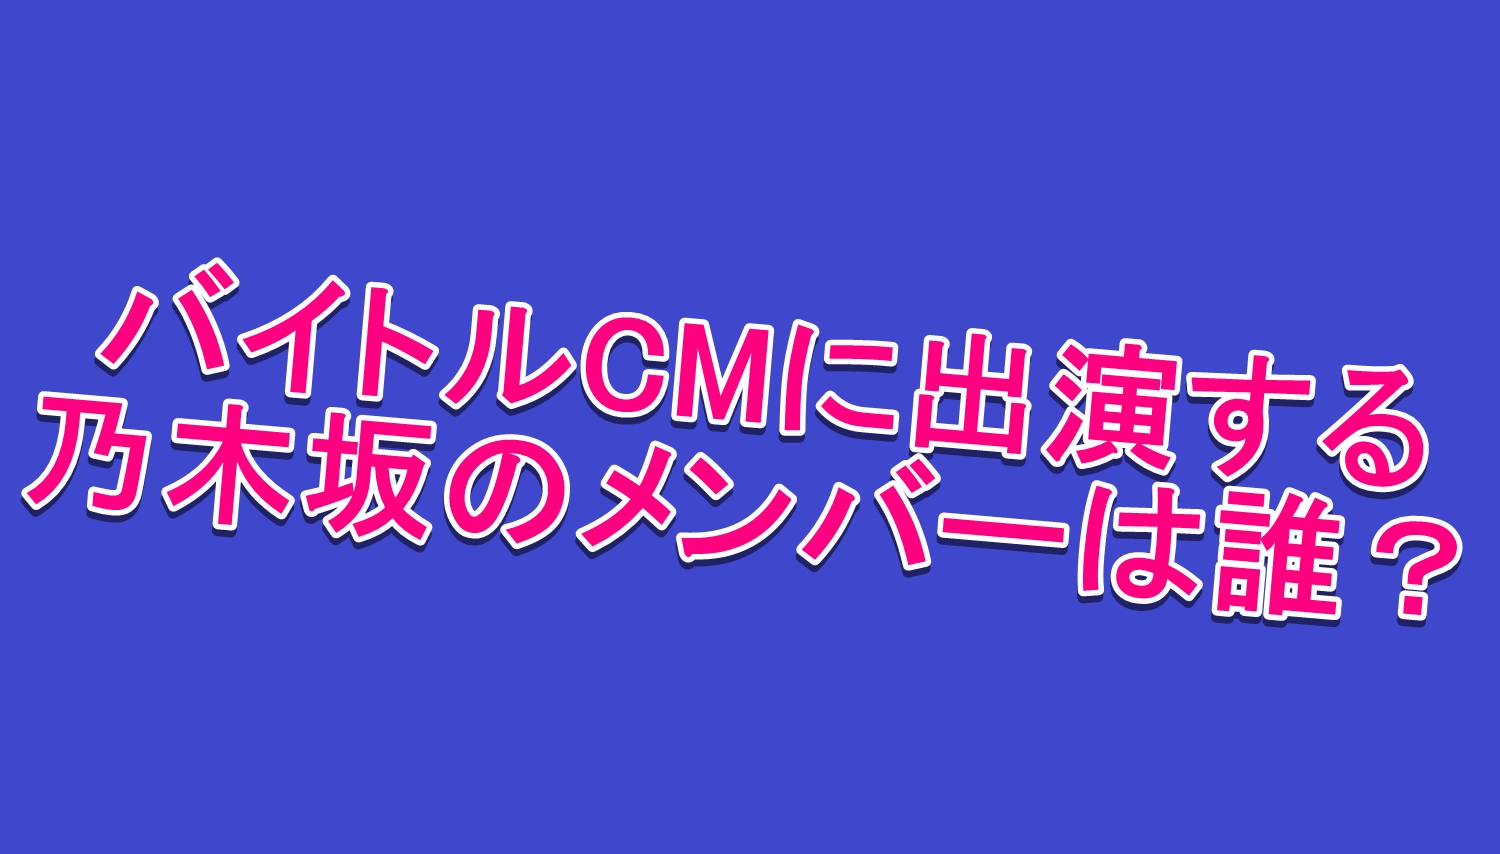 バイトルcmに出演する乃木坂46のメンバーは誰 出演者がかわいい 毎日の暇つぶしを発信する情報ブログ